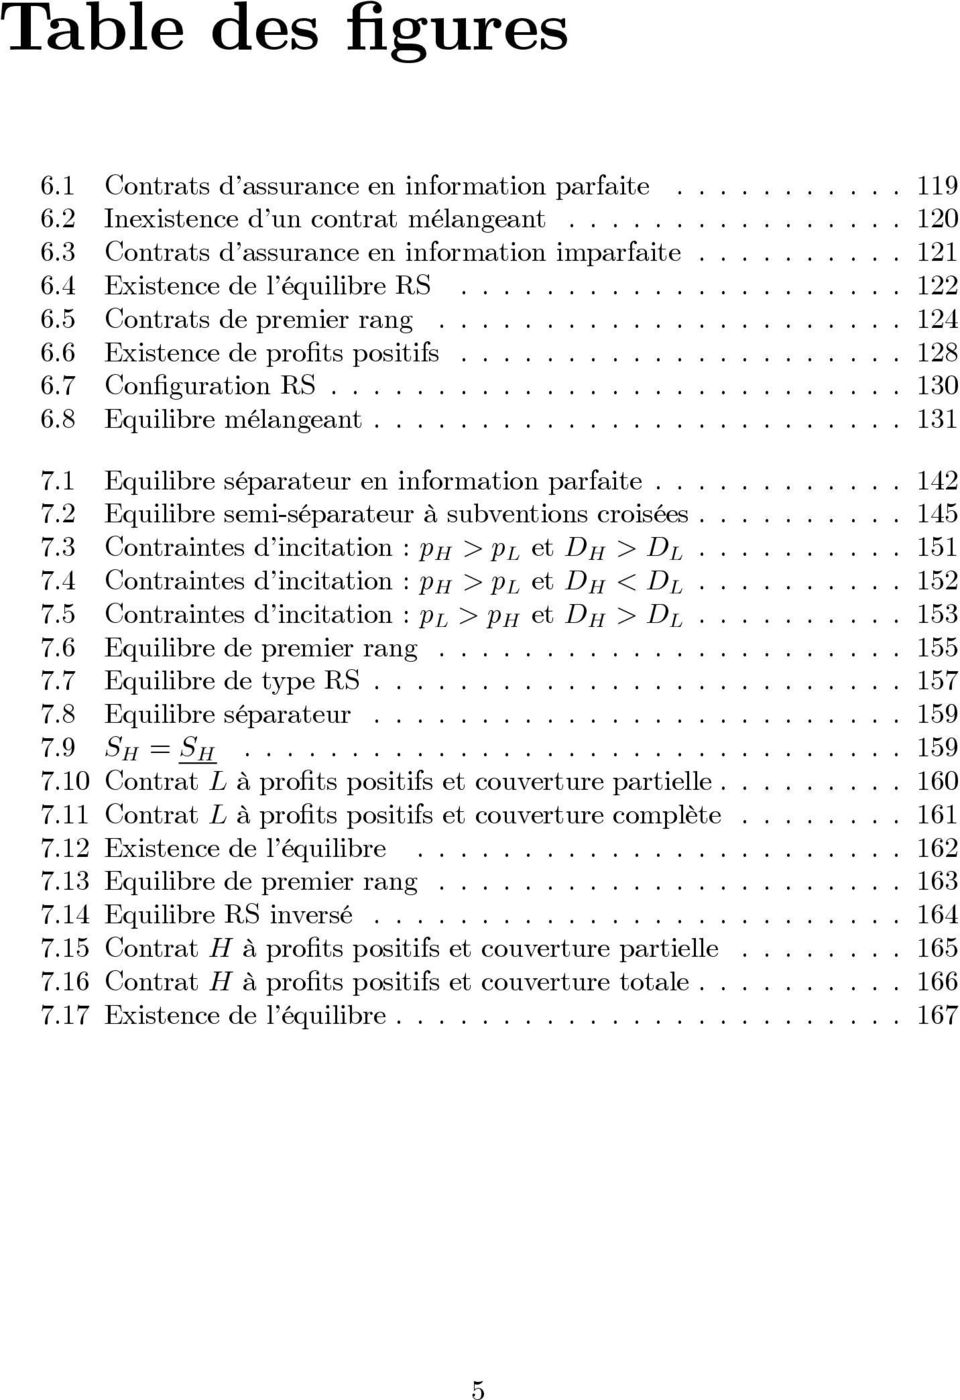 2 Equilibresemi-séparateuràsubventionscroisées...145 7.3 Contraintes d incitation : p H >p L et D H >D L...151 7.4 Contraintes d incitation : p H >p L et D H <D L...152 7.